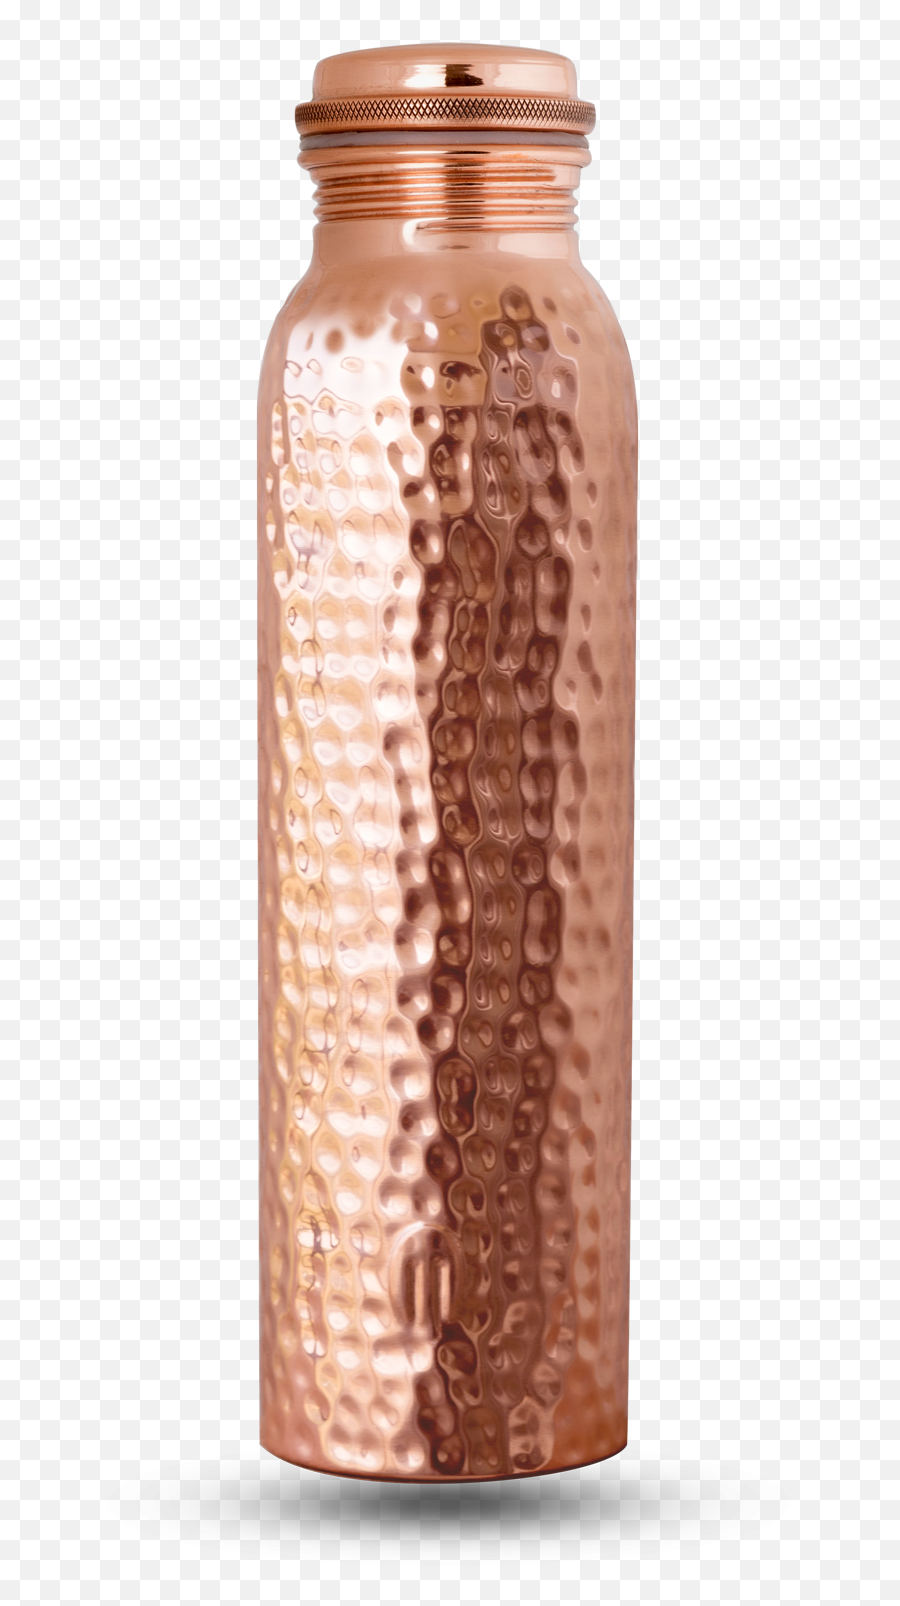 Download Hammered Copper Bottle Png Transparent - Uokplrs Copper Bottle Hammered,Jar Transparent Background